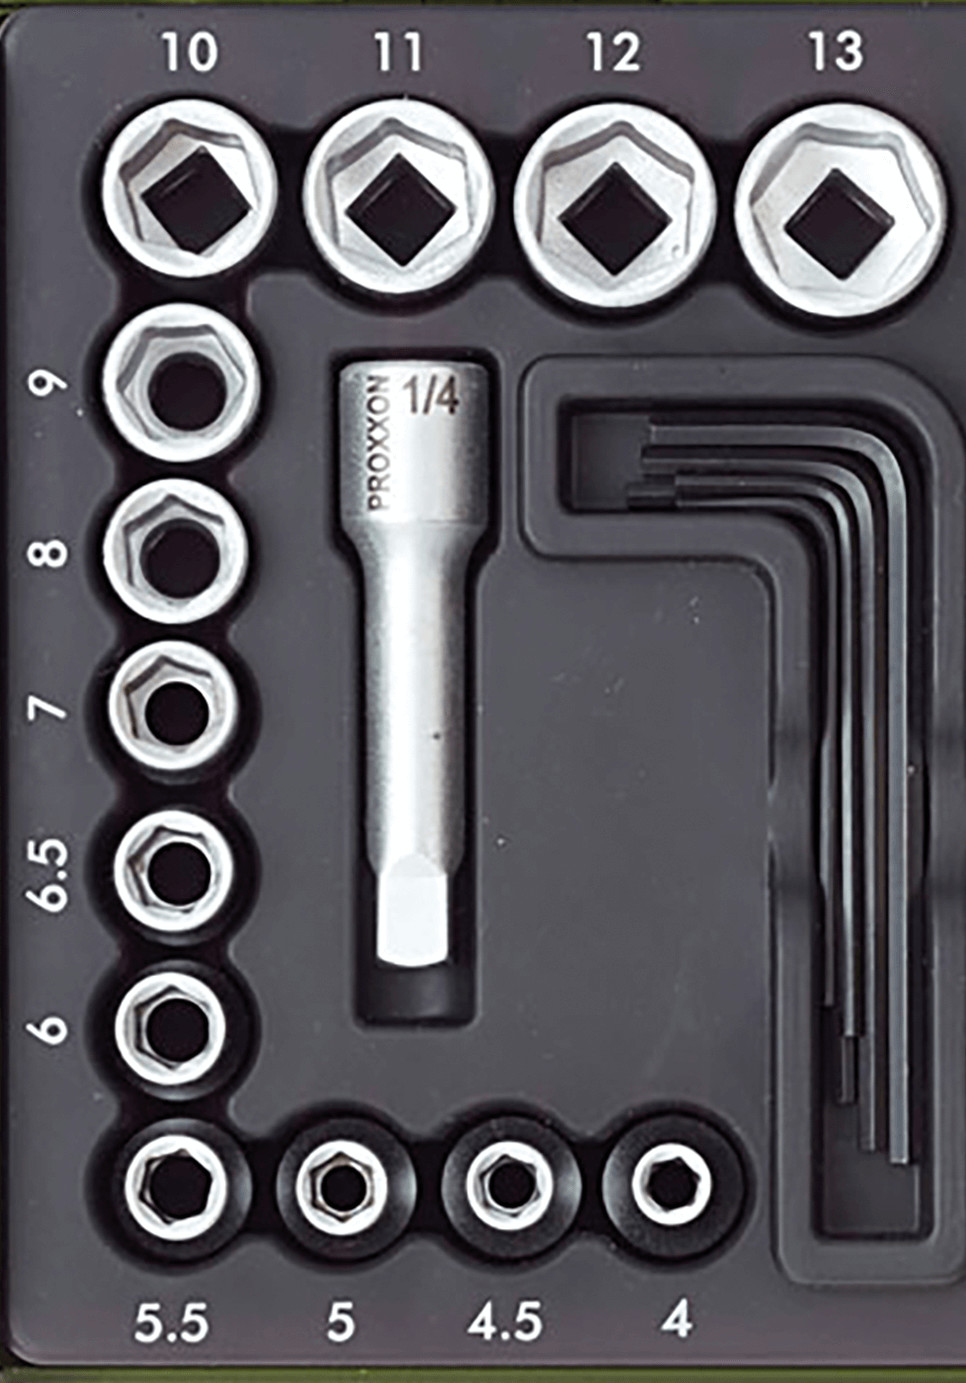 Llave de tubo de 1/4 para tornillos de cabeza hueca Proxxon 23751 de 8 mm  HX por solo € 1.9